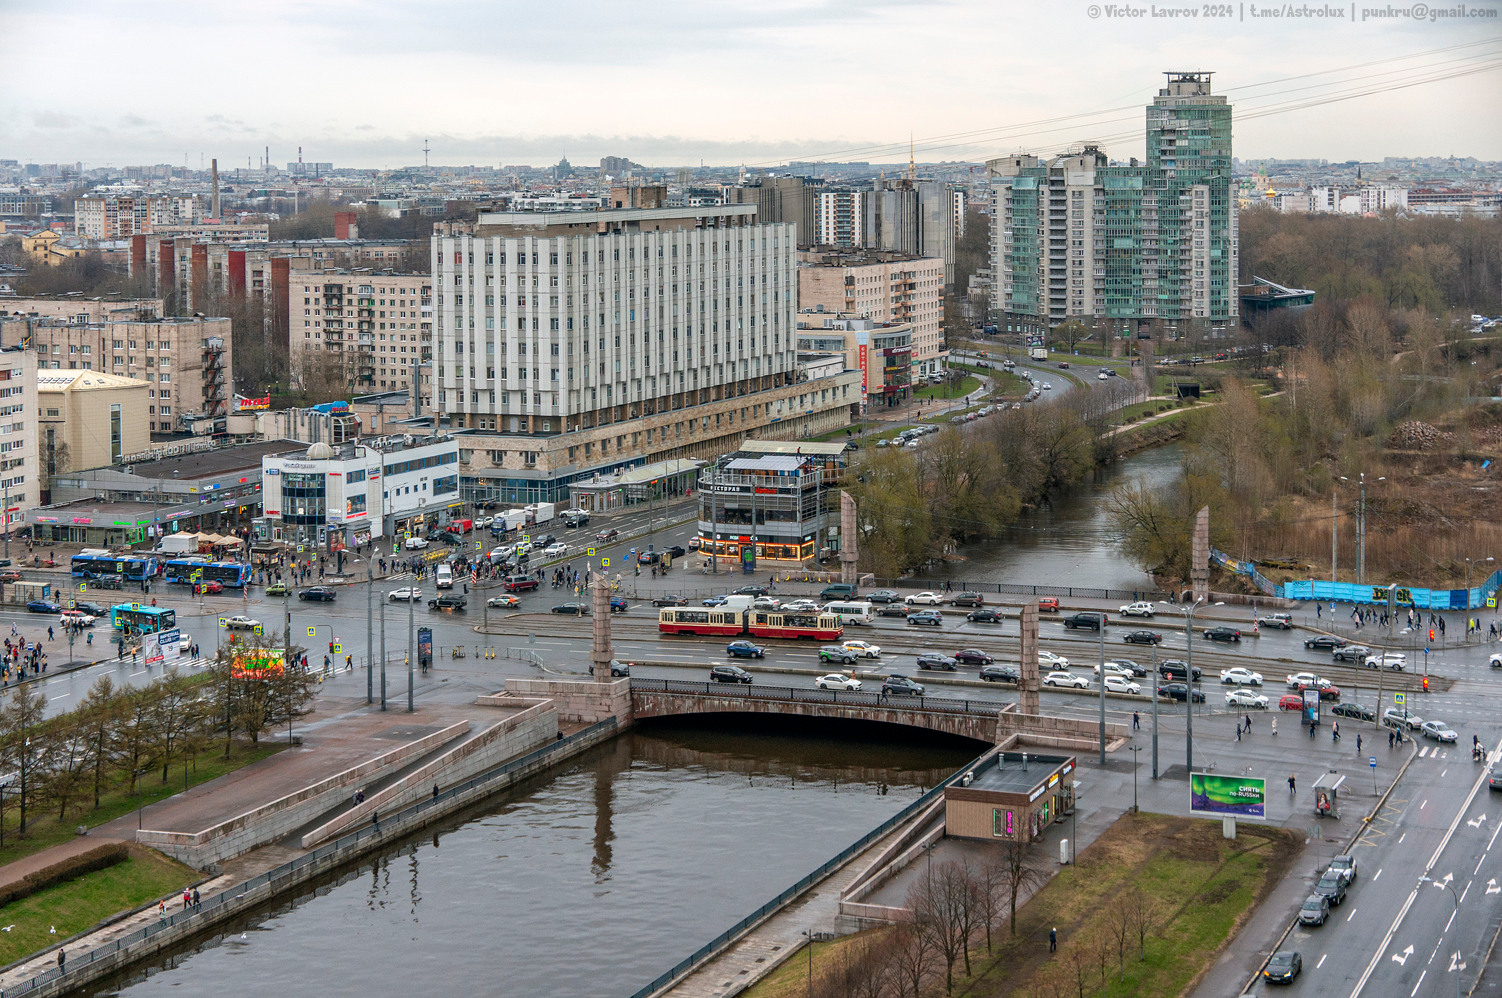 Sankt Petersburg — Bridges; Sankt Petersburg — Tram lines and infrastructure; Sankt Petersburg — Trolleybus lines and infrastructure